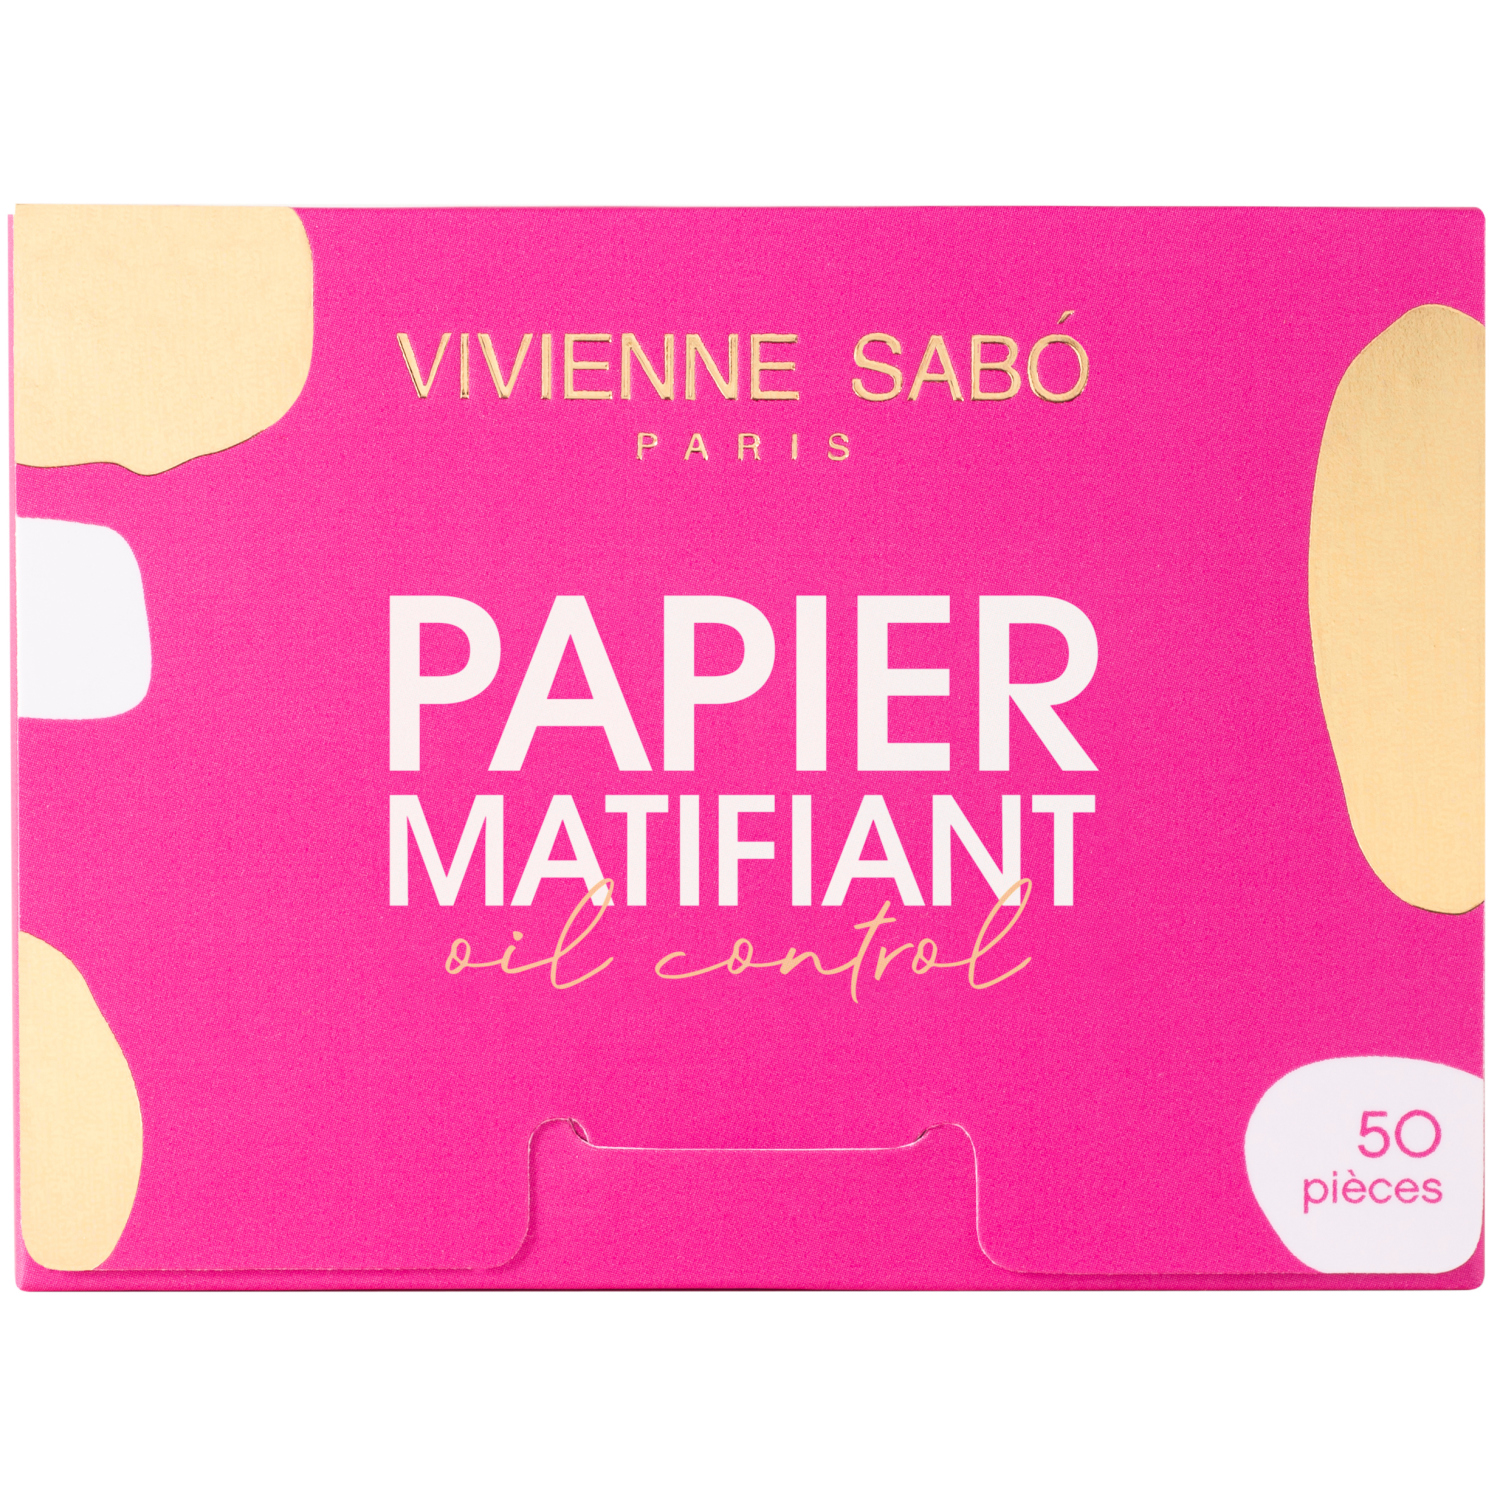 Матирующие салфетки Vivienne Sabo Papier Matifiant, моментальное удаление жирного блеска, прозрачно-розоватые, 50шт. салфетки для лица матирующие cettua 50 шт